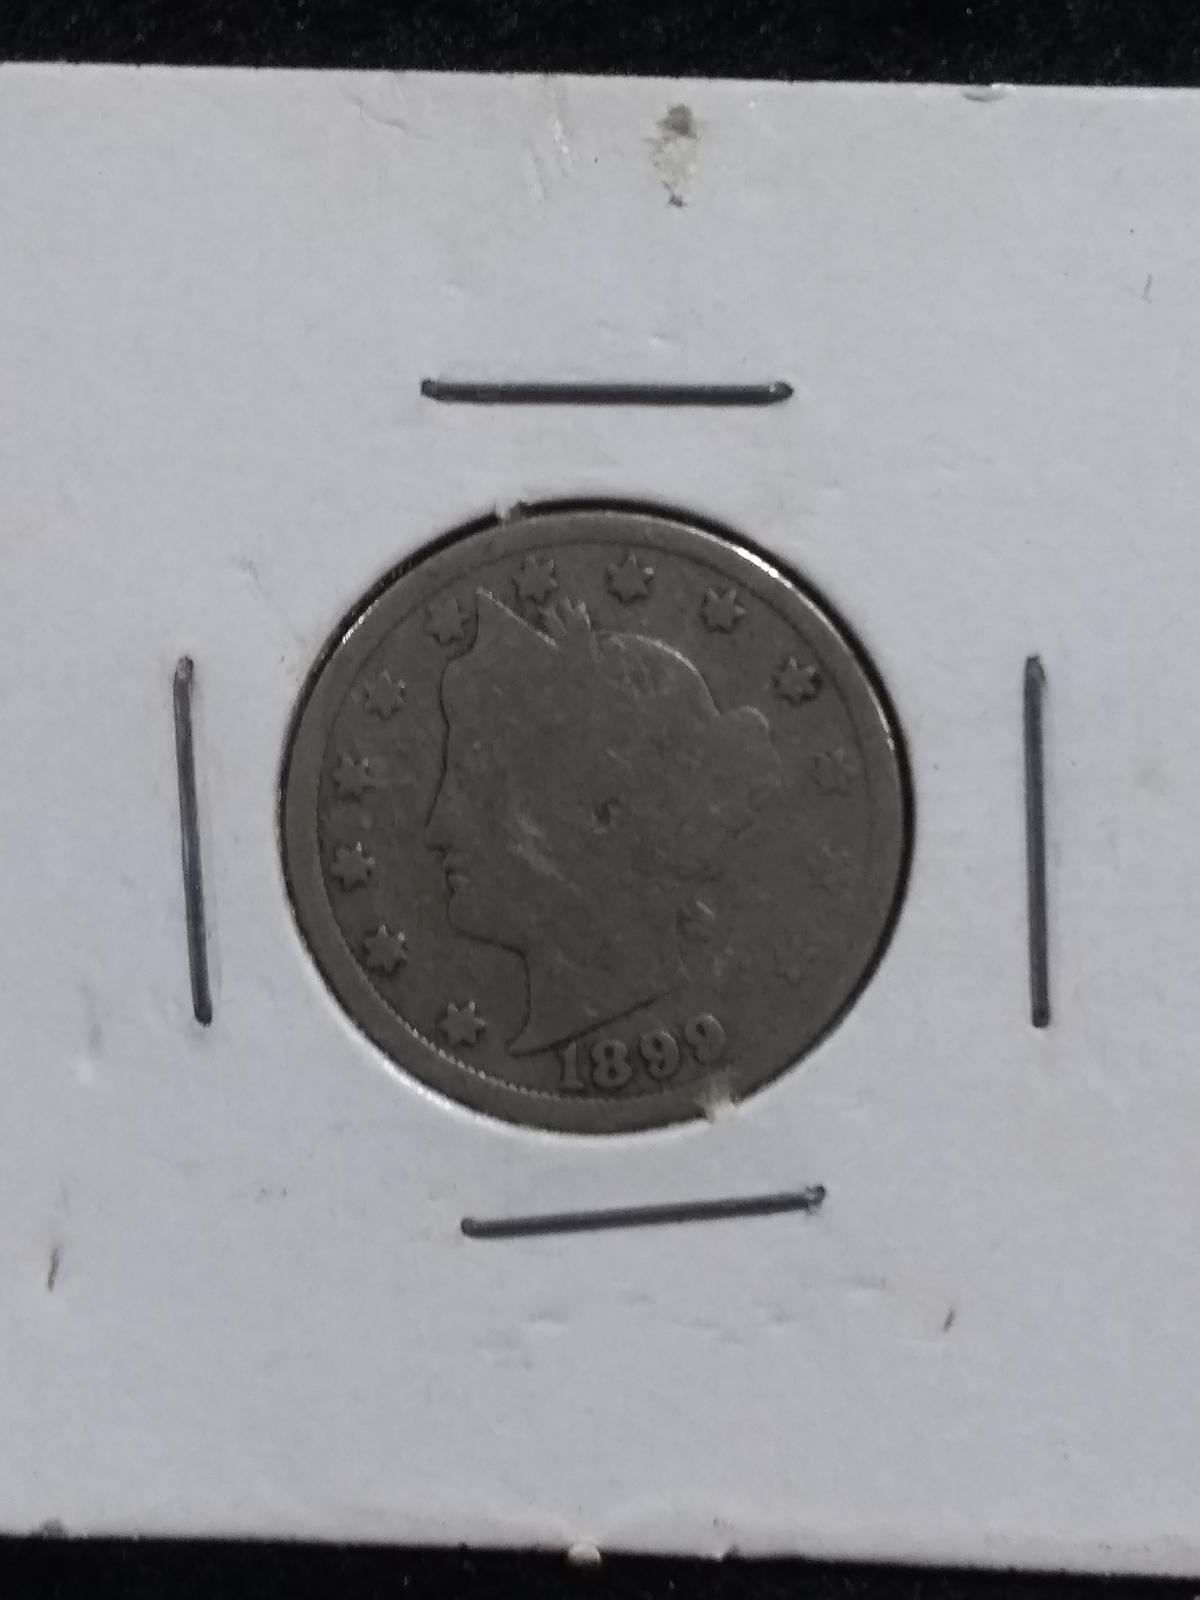 Coin-1899 "V" Nickel